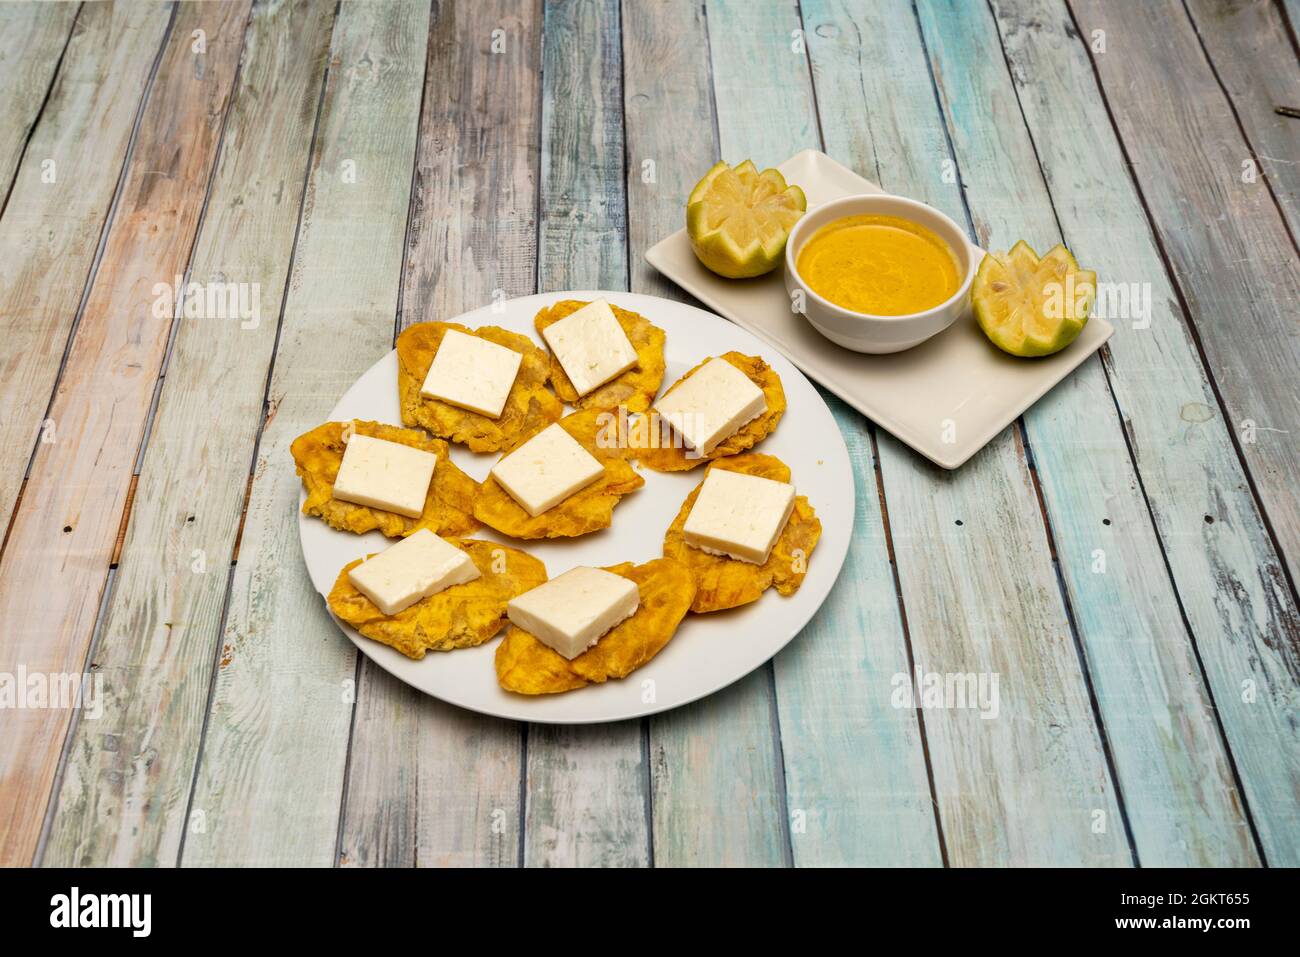 Assiette avec patacones plantain et fromage frais et sauce Chili pour trempette Banque D'Images